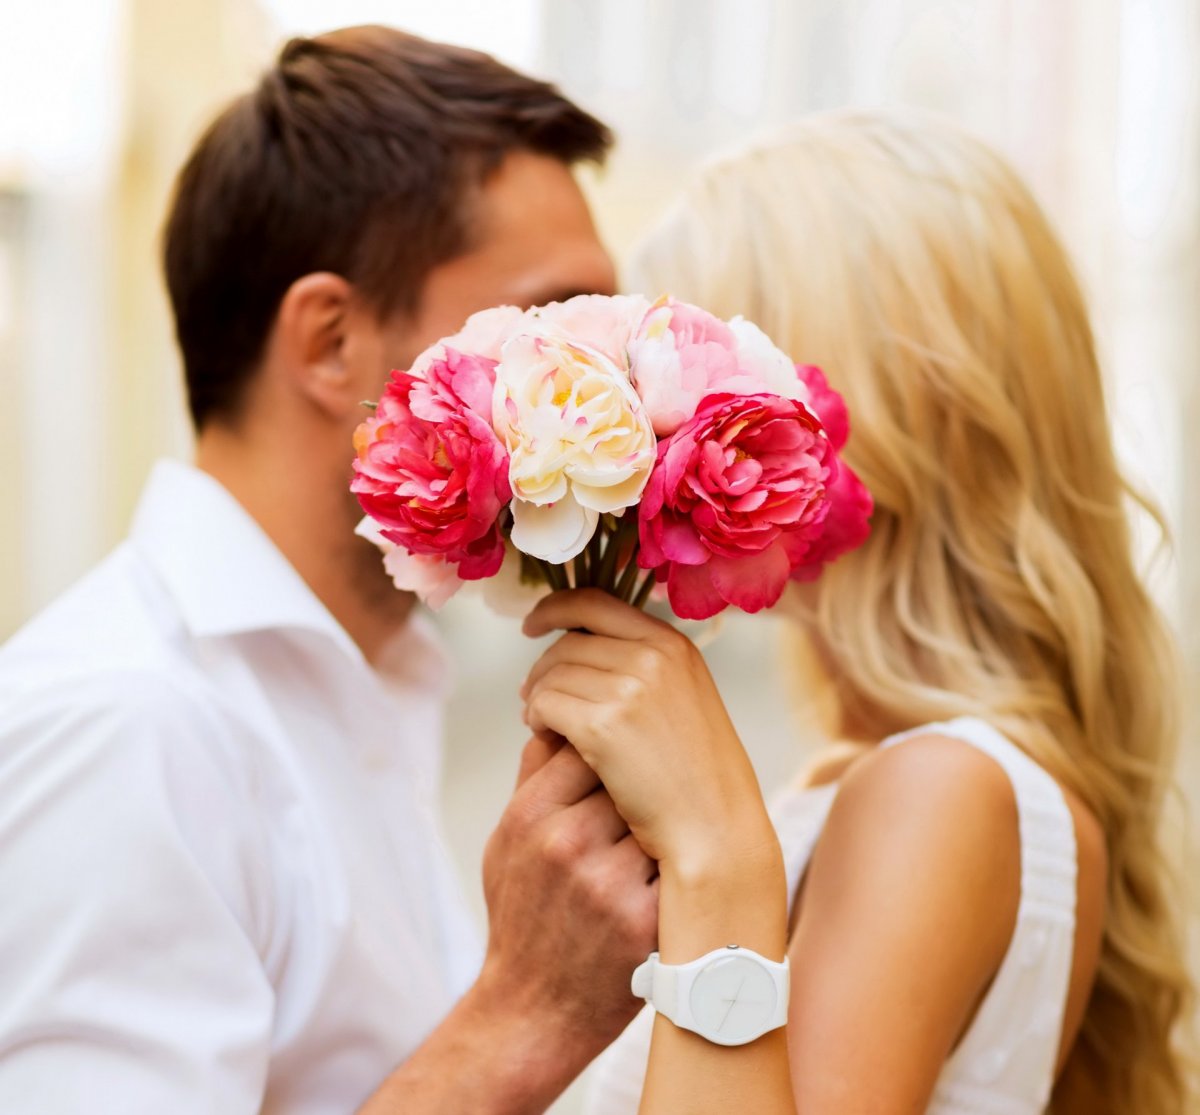 Что значит когда мужчина дарит женщине цветы?